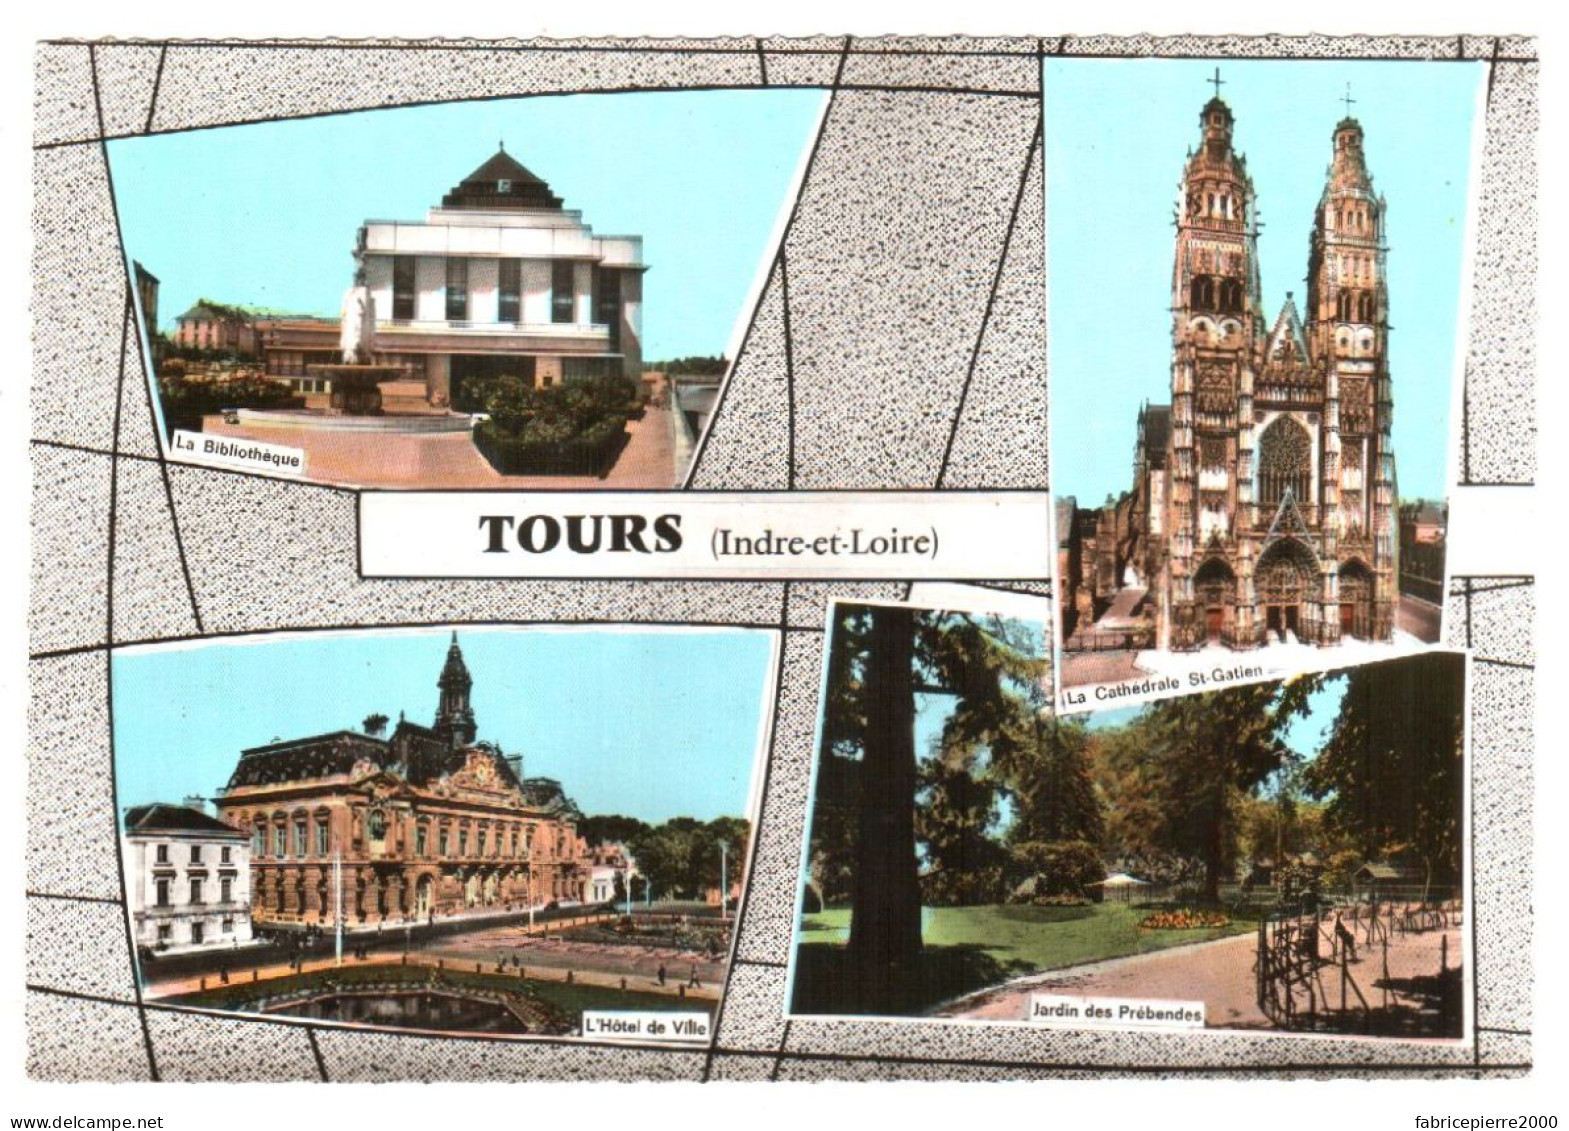 CPSM 37 (Indre-et-Loire) Tours - Bibliothèque, Jardin Des Prébandes, Cathédrale Saint-Gatien, Hôtel-de-Ville TBE Couleur - Libraries